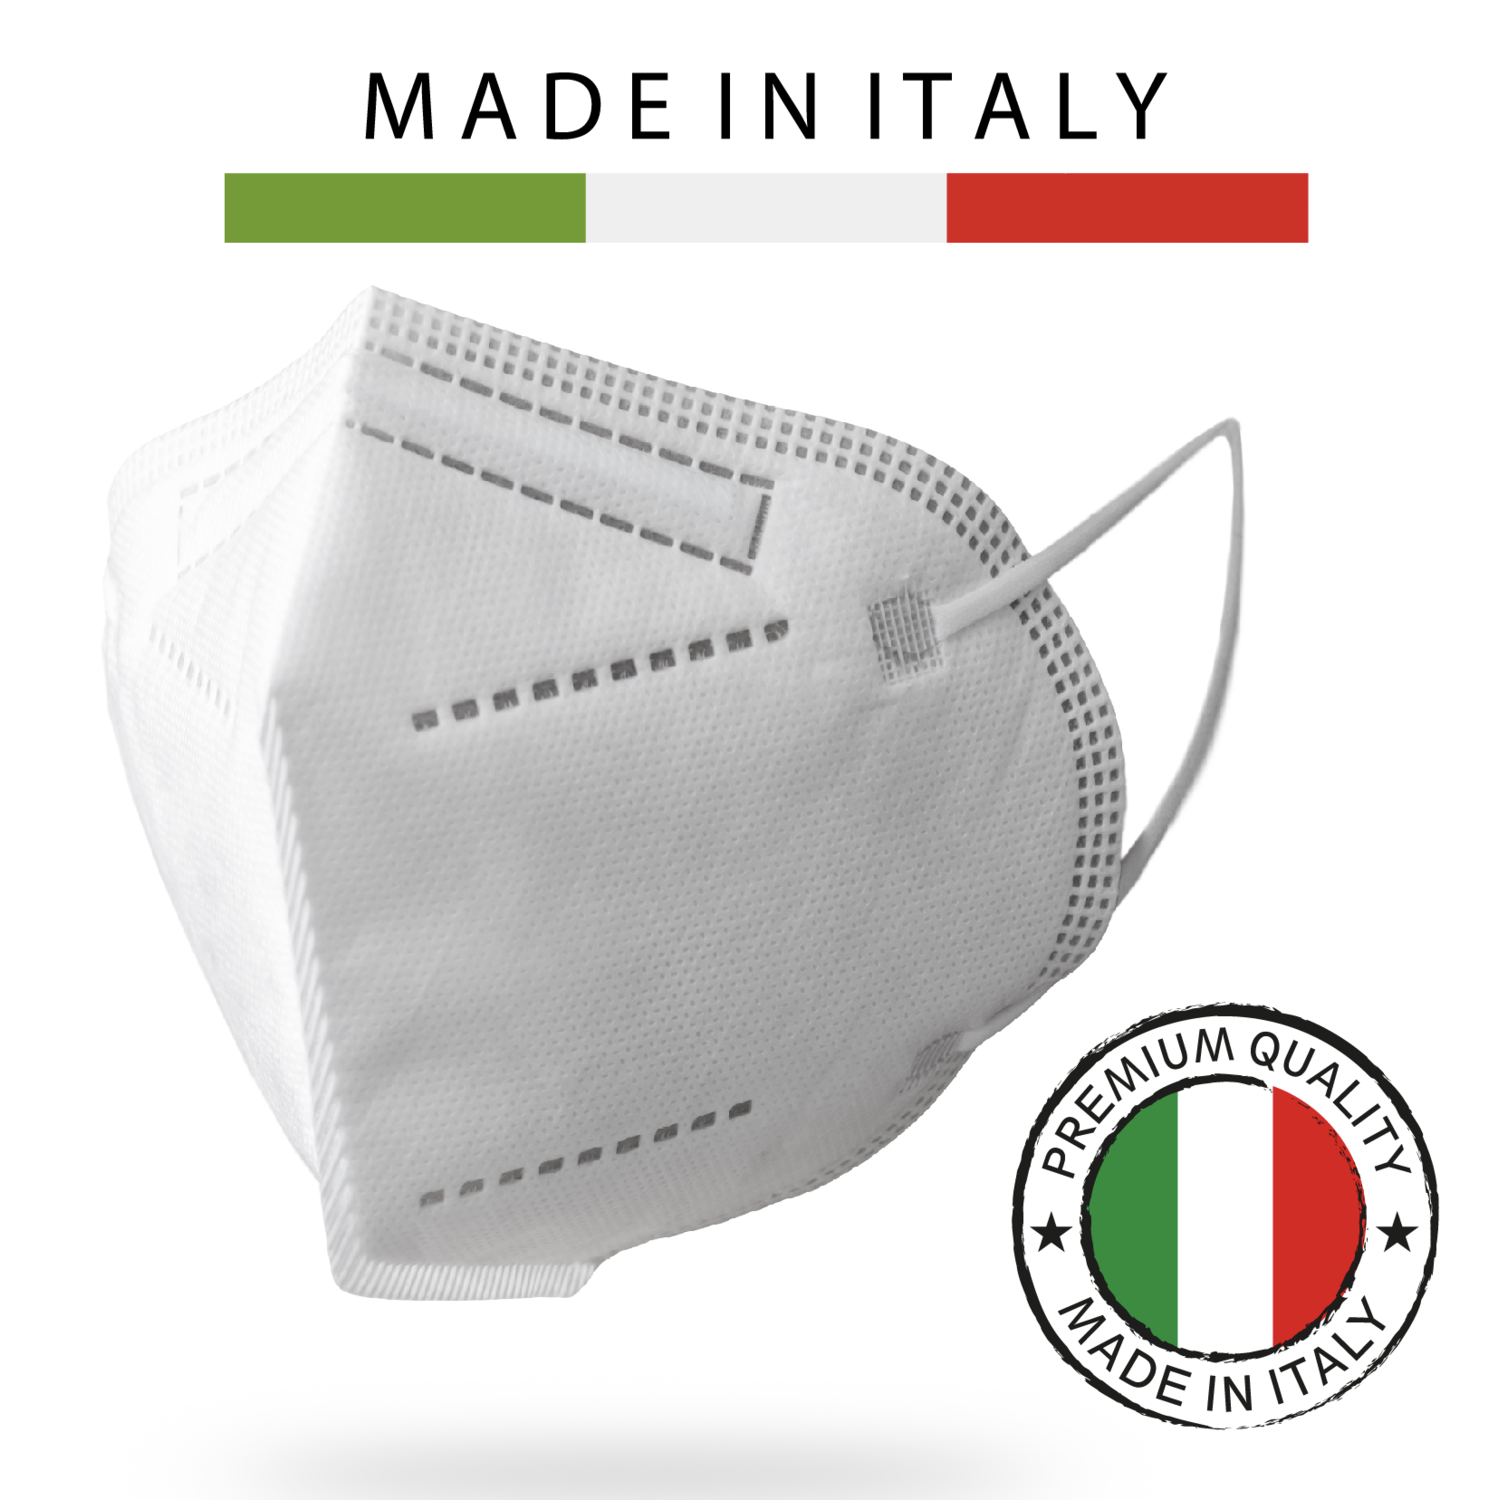 50 pz FFP2 Protettiva, 100% Made In Italy, Super Filtrante